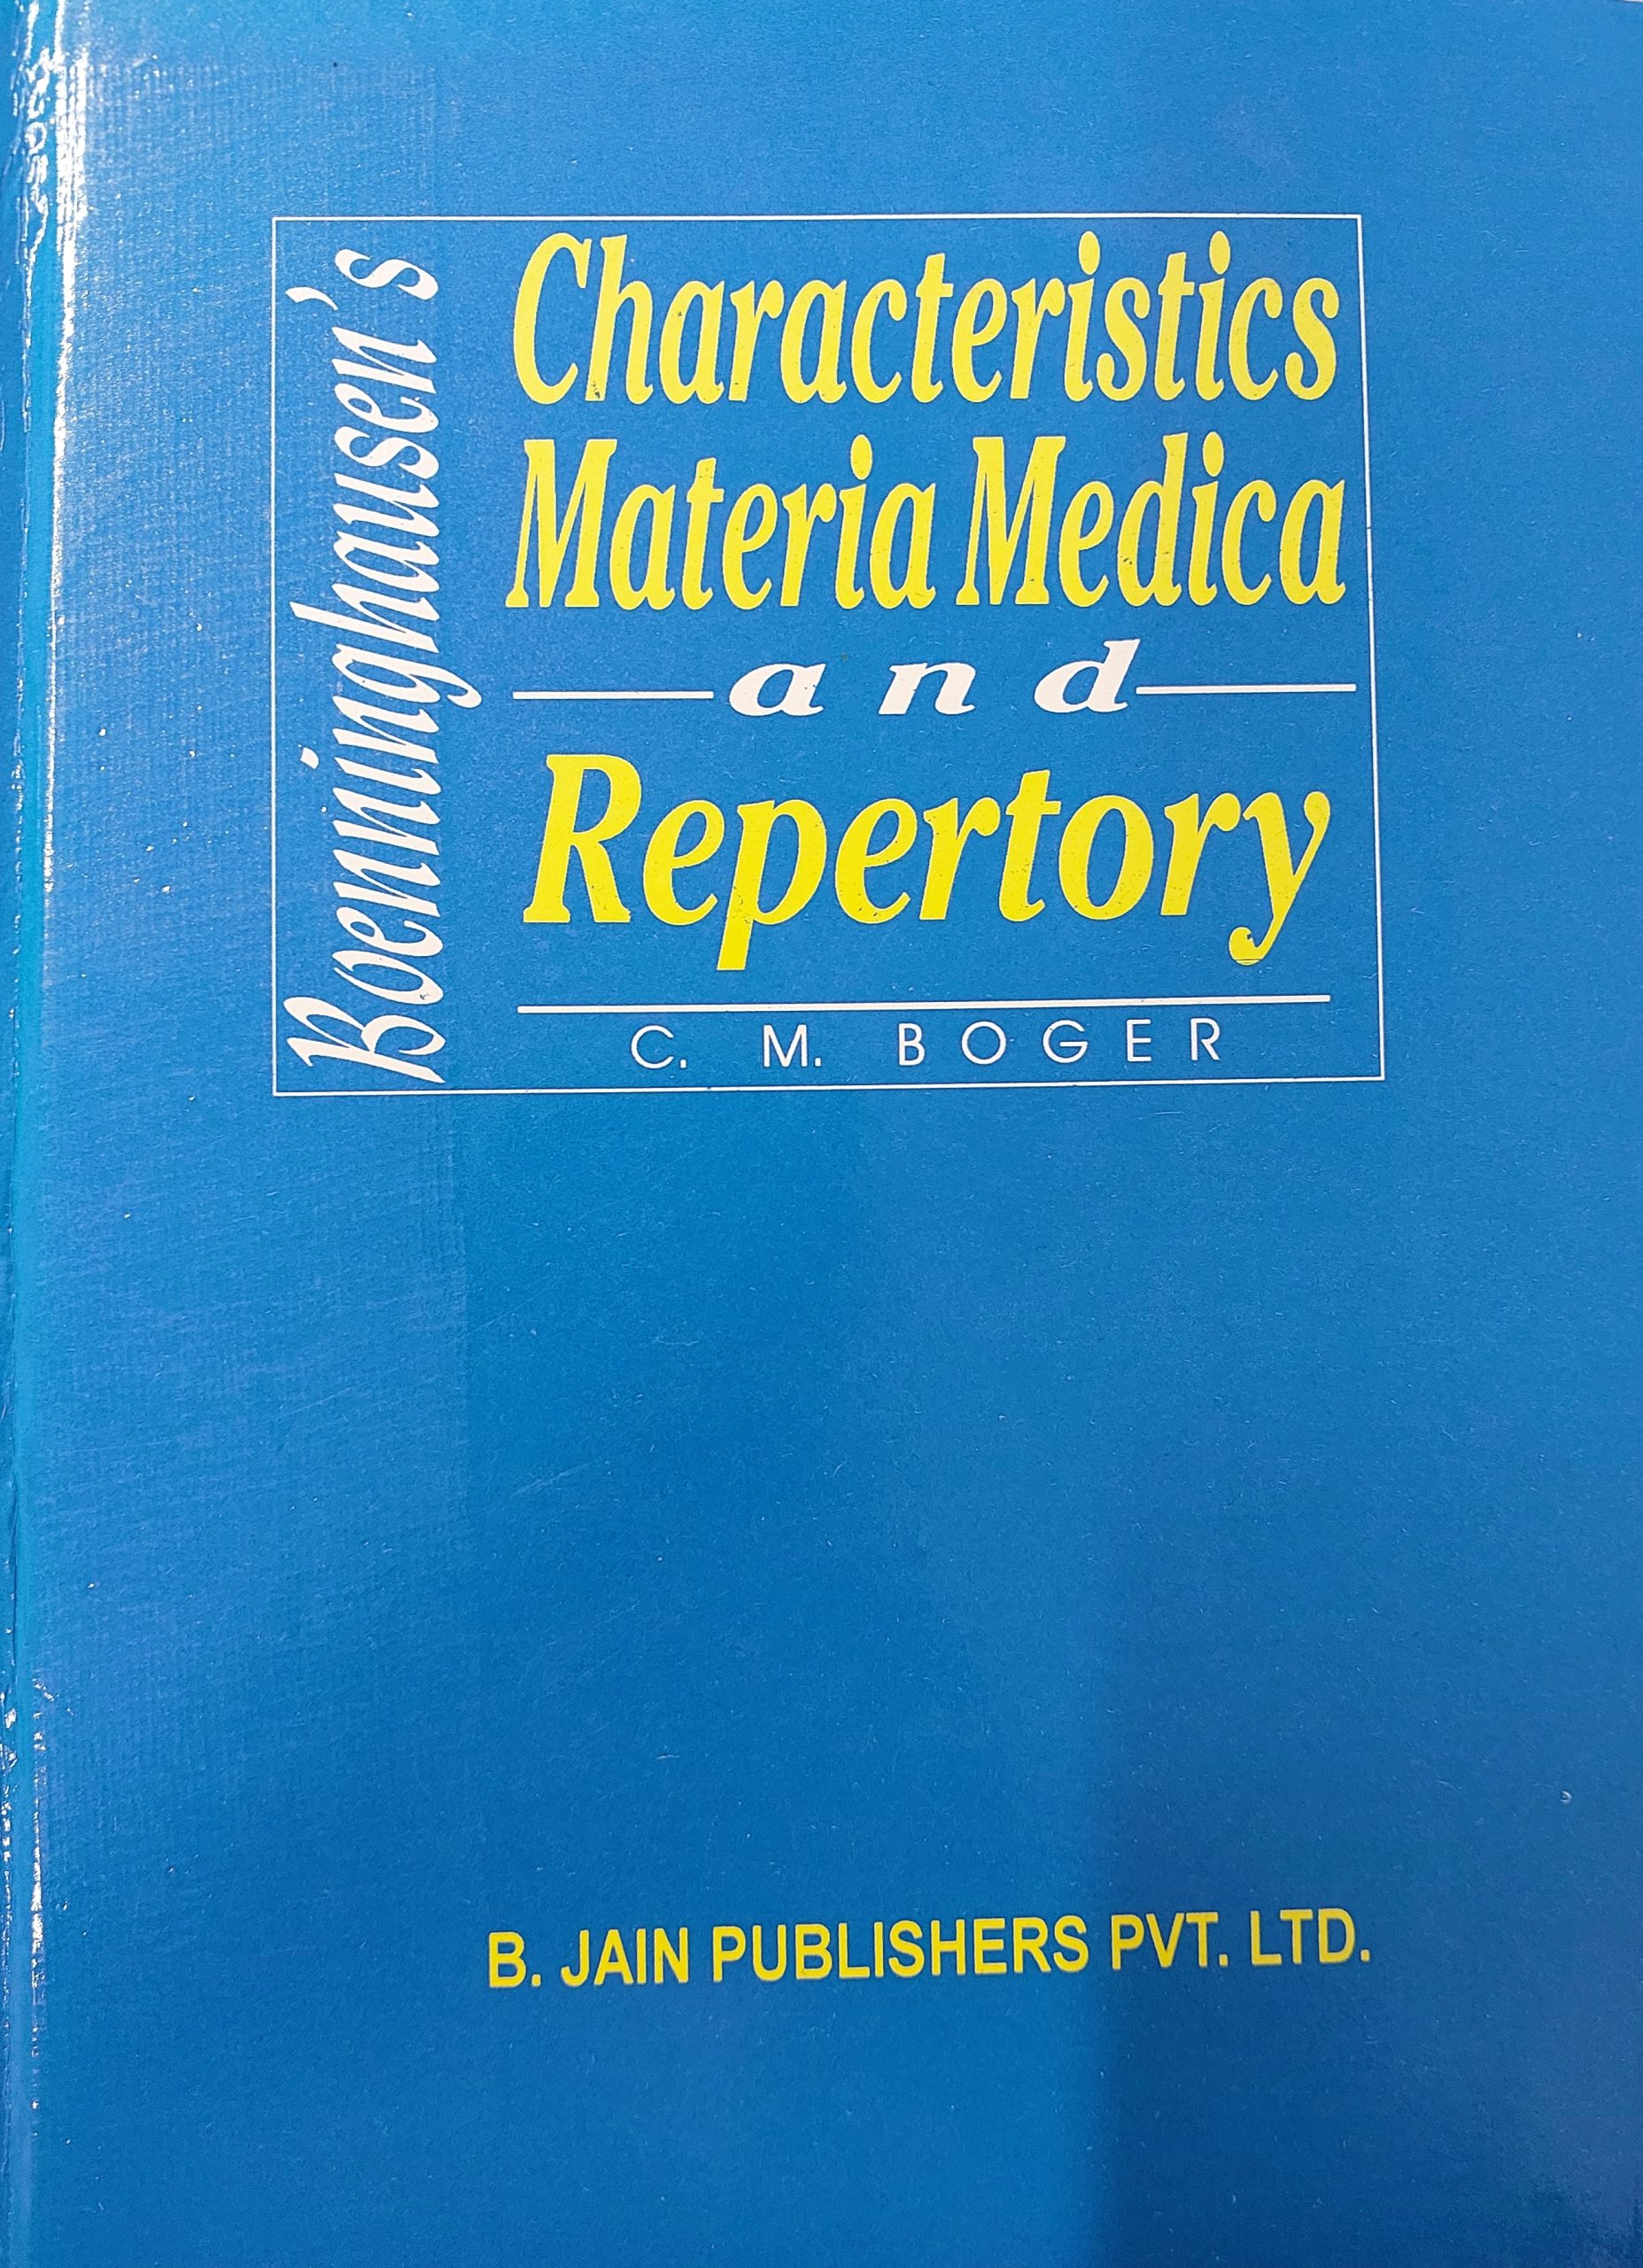 Characteristics, Materia Medica and Repertory